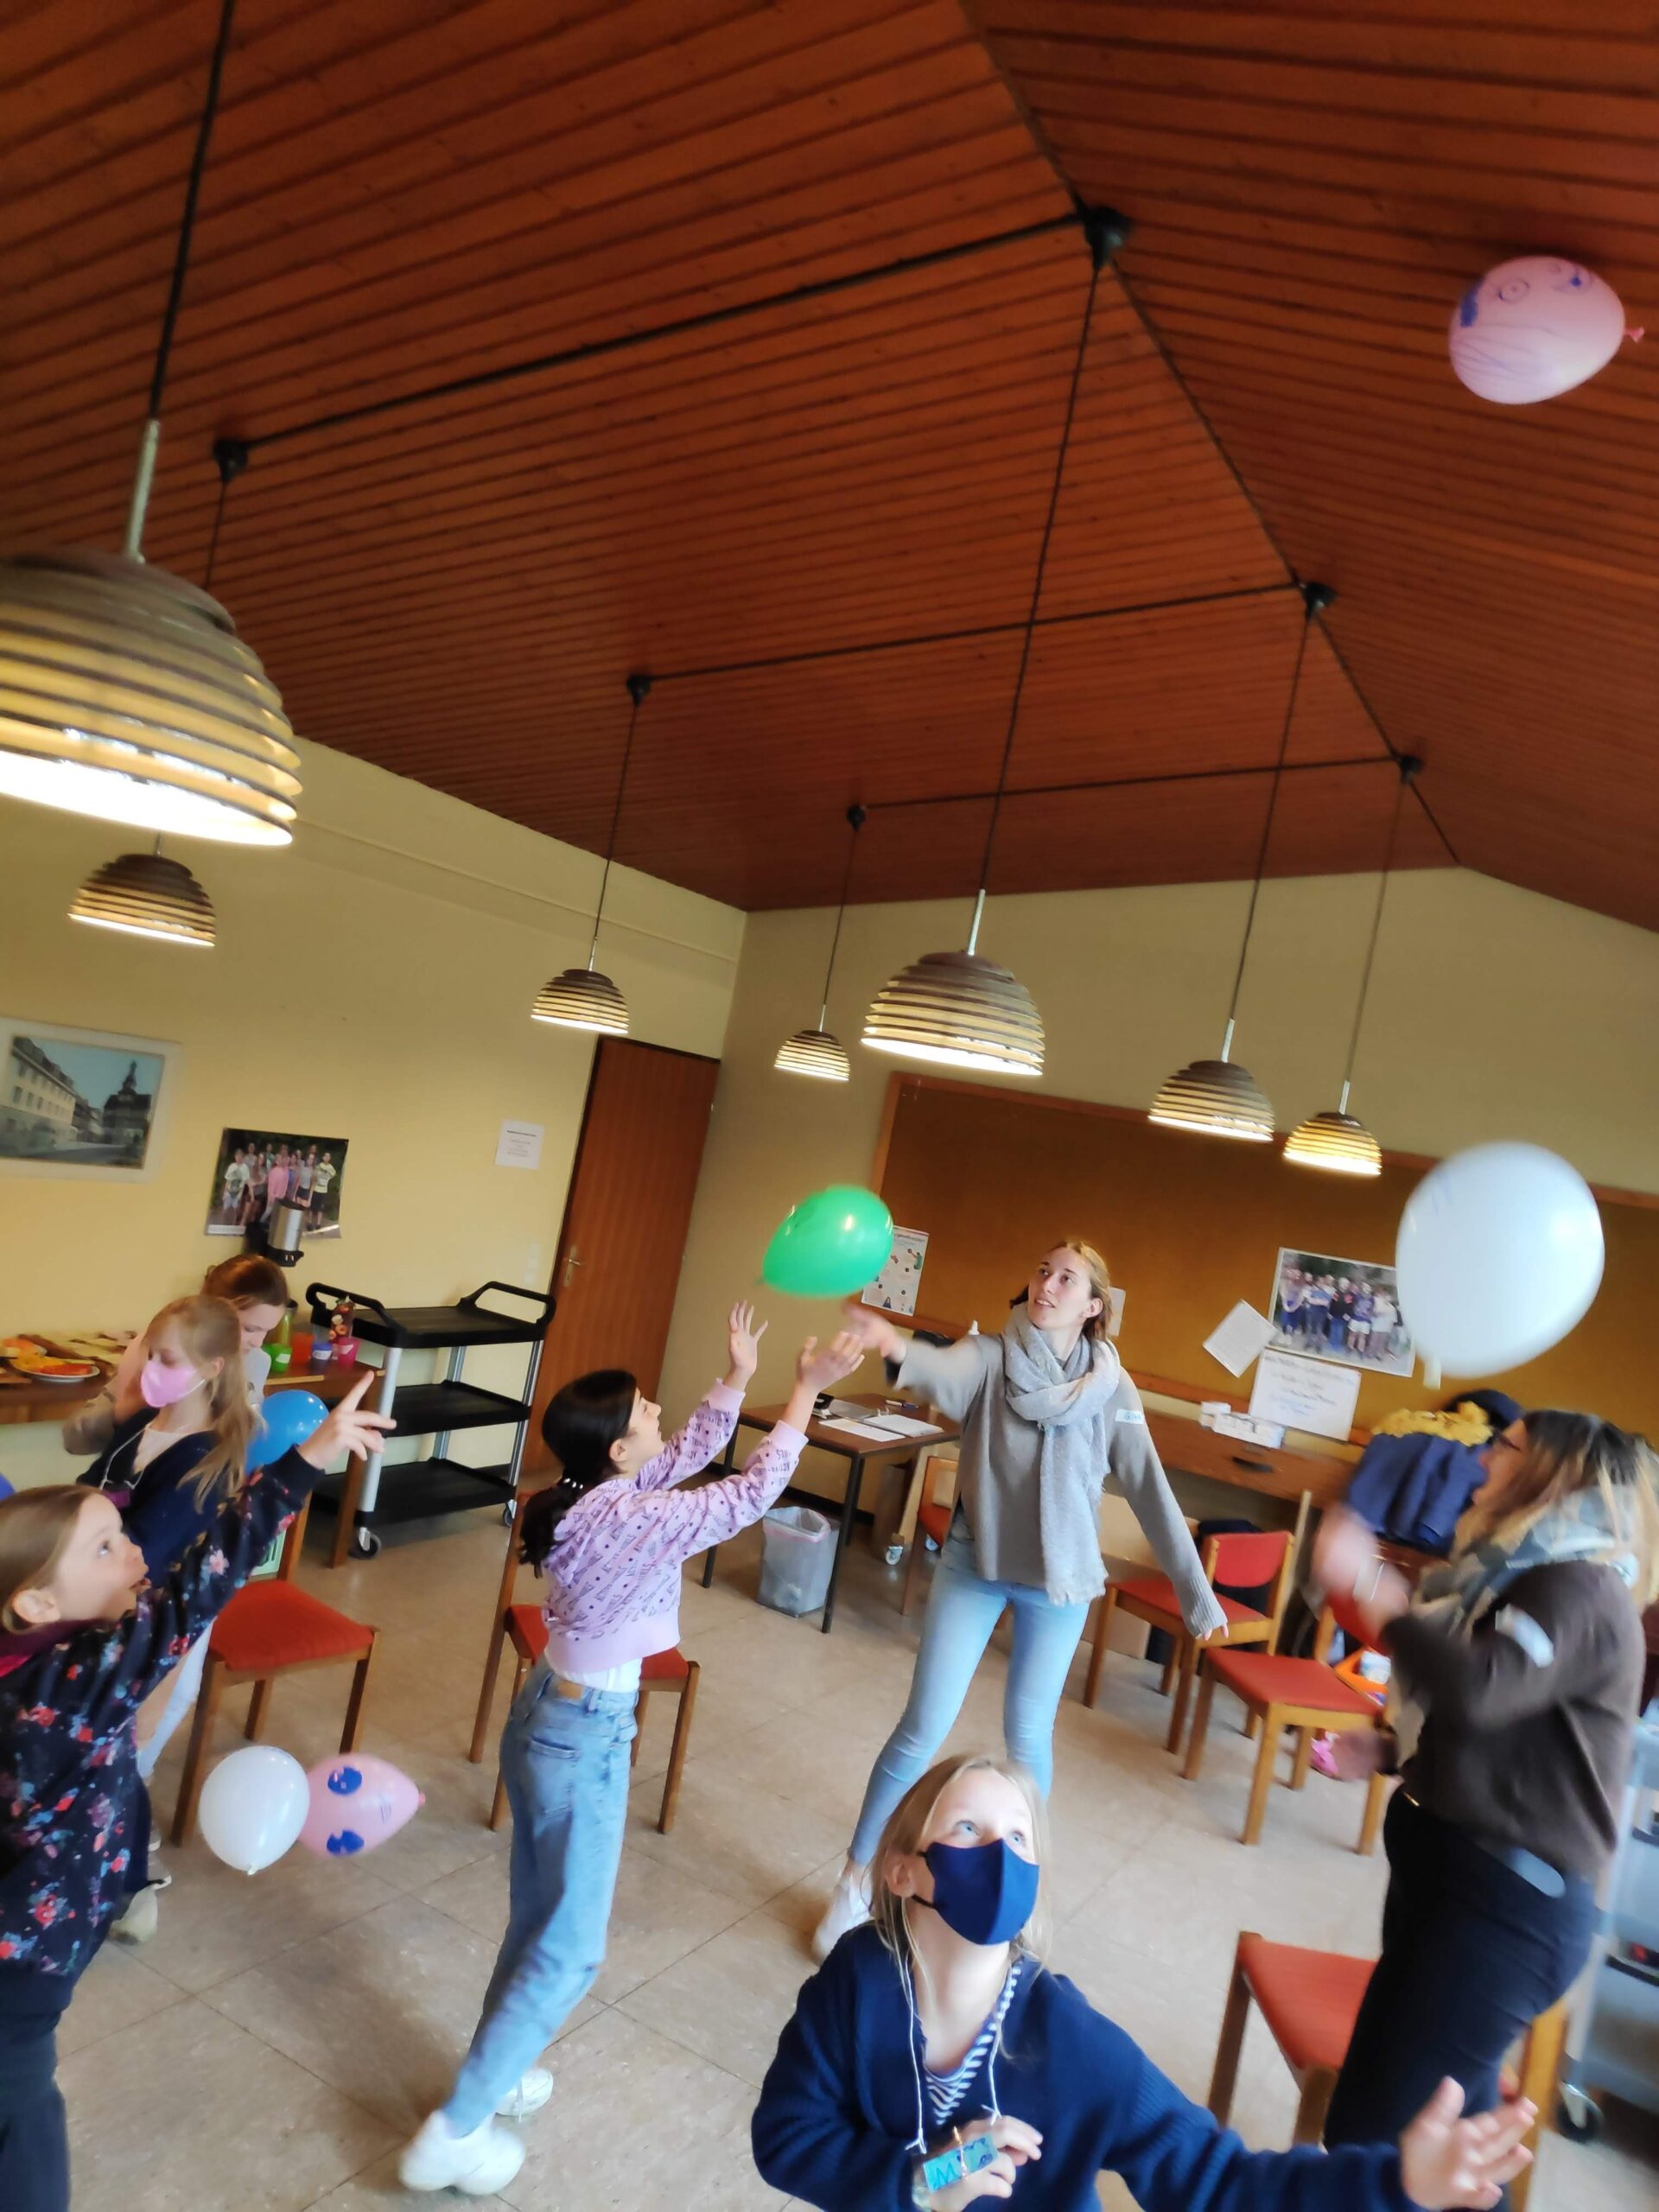 Wir wollen helfen! – Osterferienprojekt mit Kindern in der Hildesheimer Nordstadt